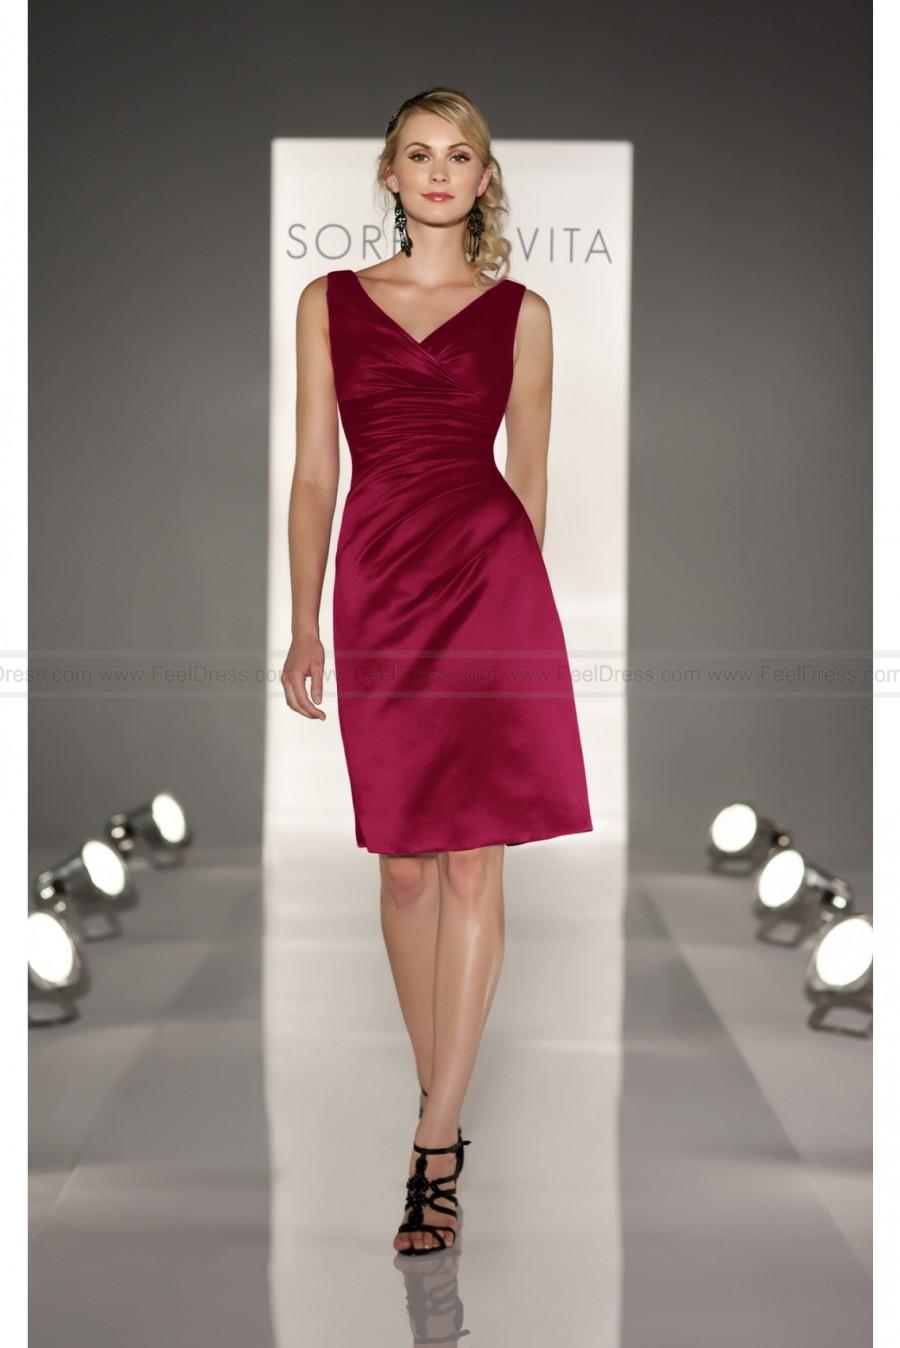 زفاف - Sorella Vita Burgundy Bridesmaid Dress Style 8199